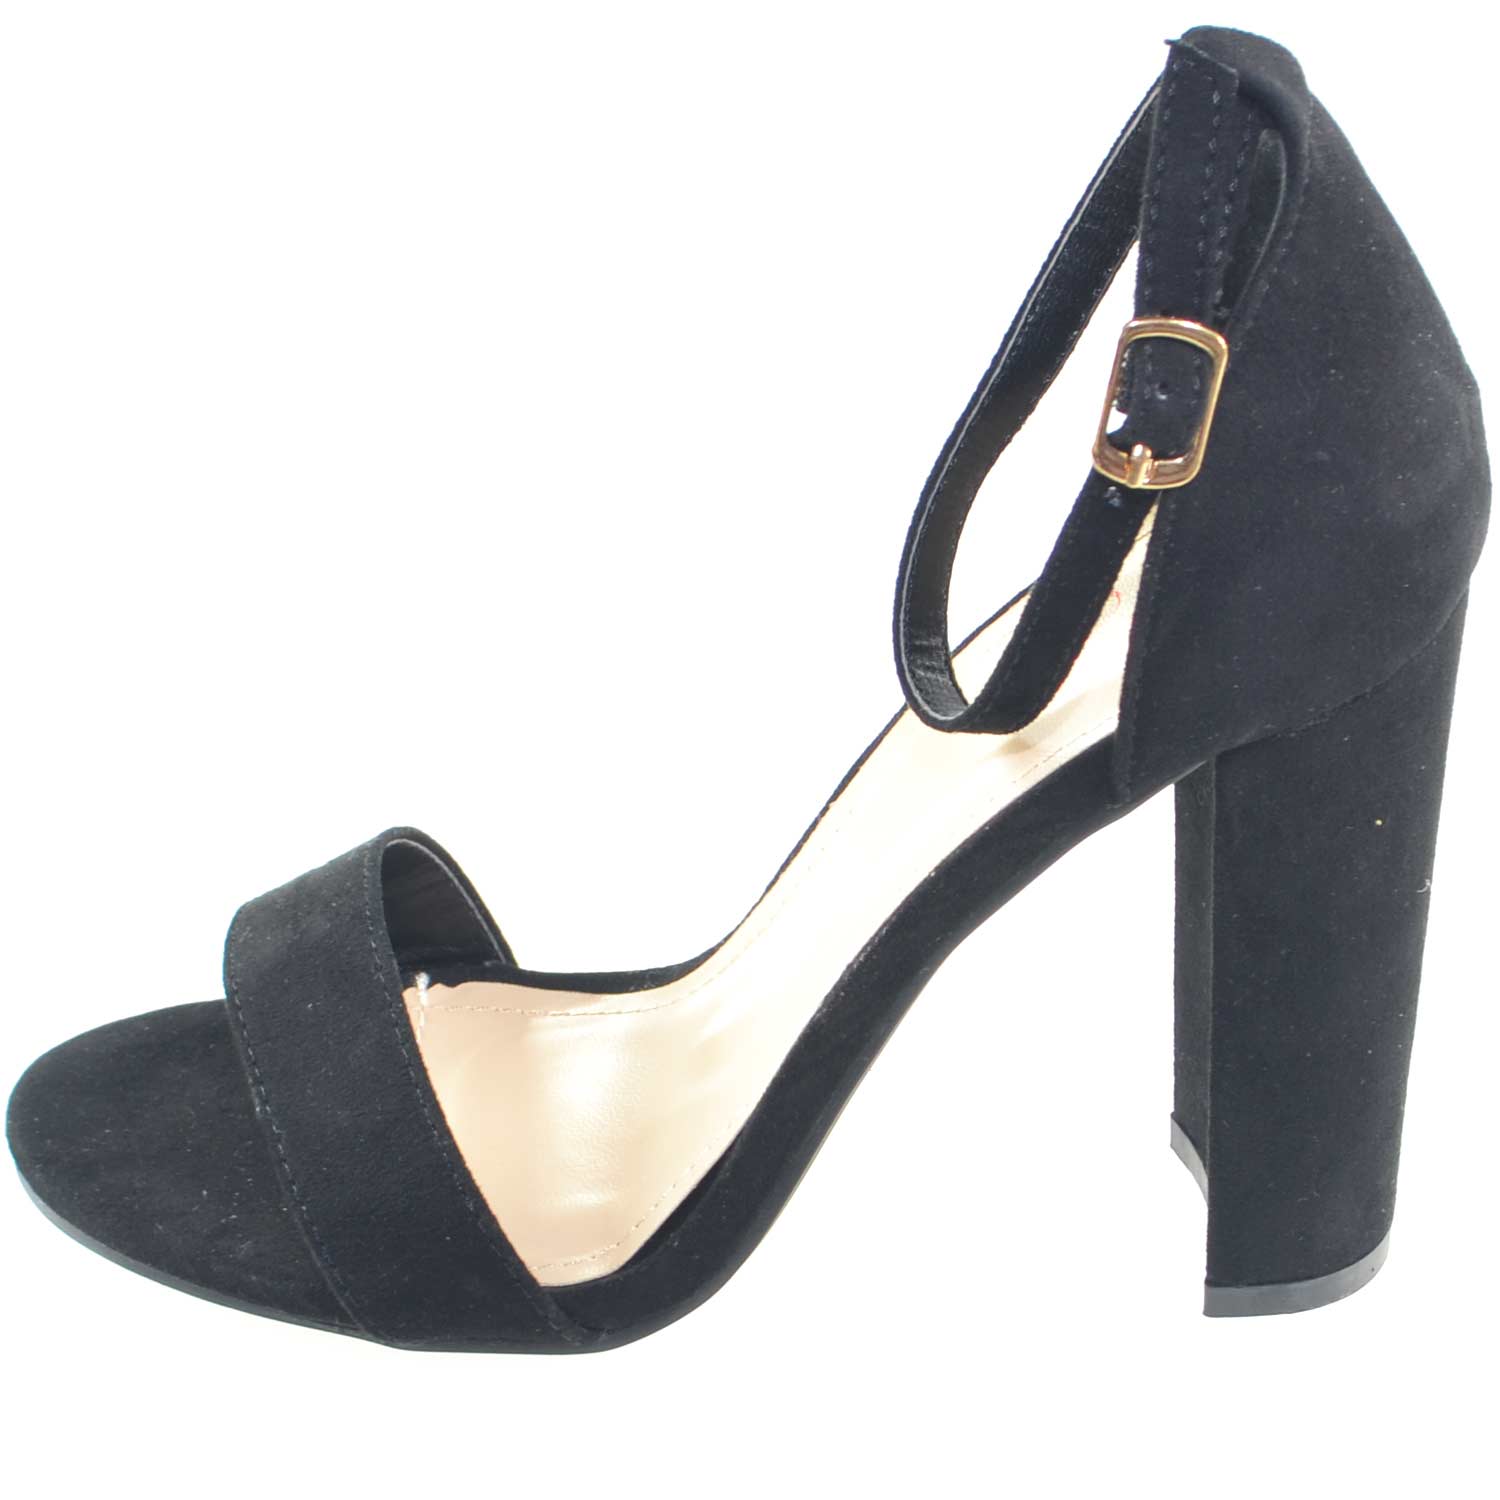 Sandalo tacco nero scarpe donna eleganti tacco doppio comfort per cerimonia moda glamour